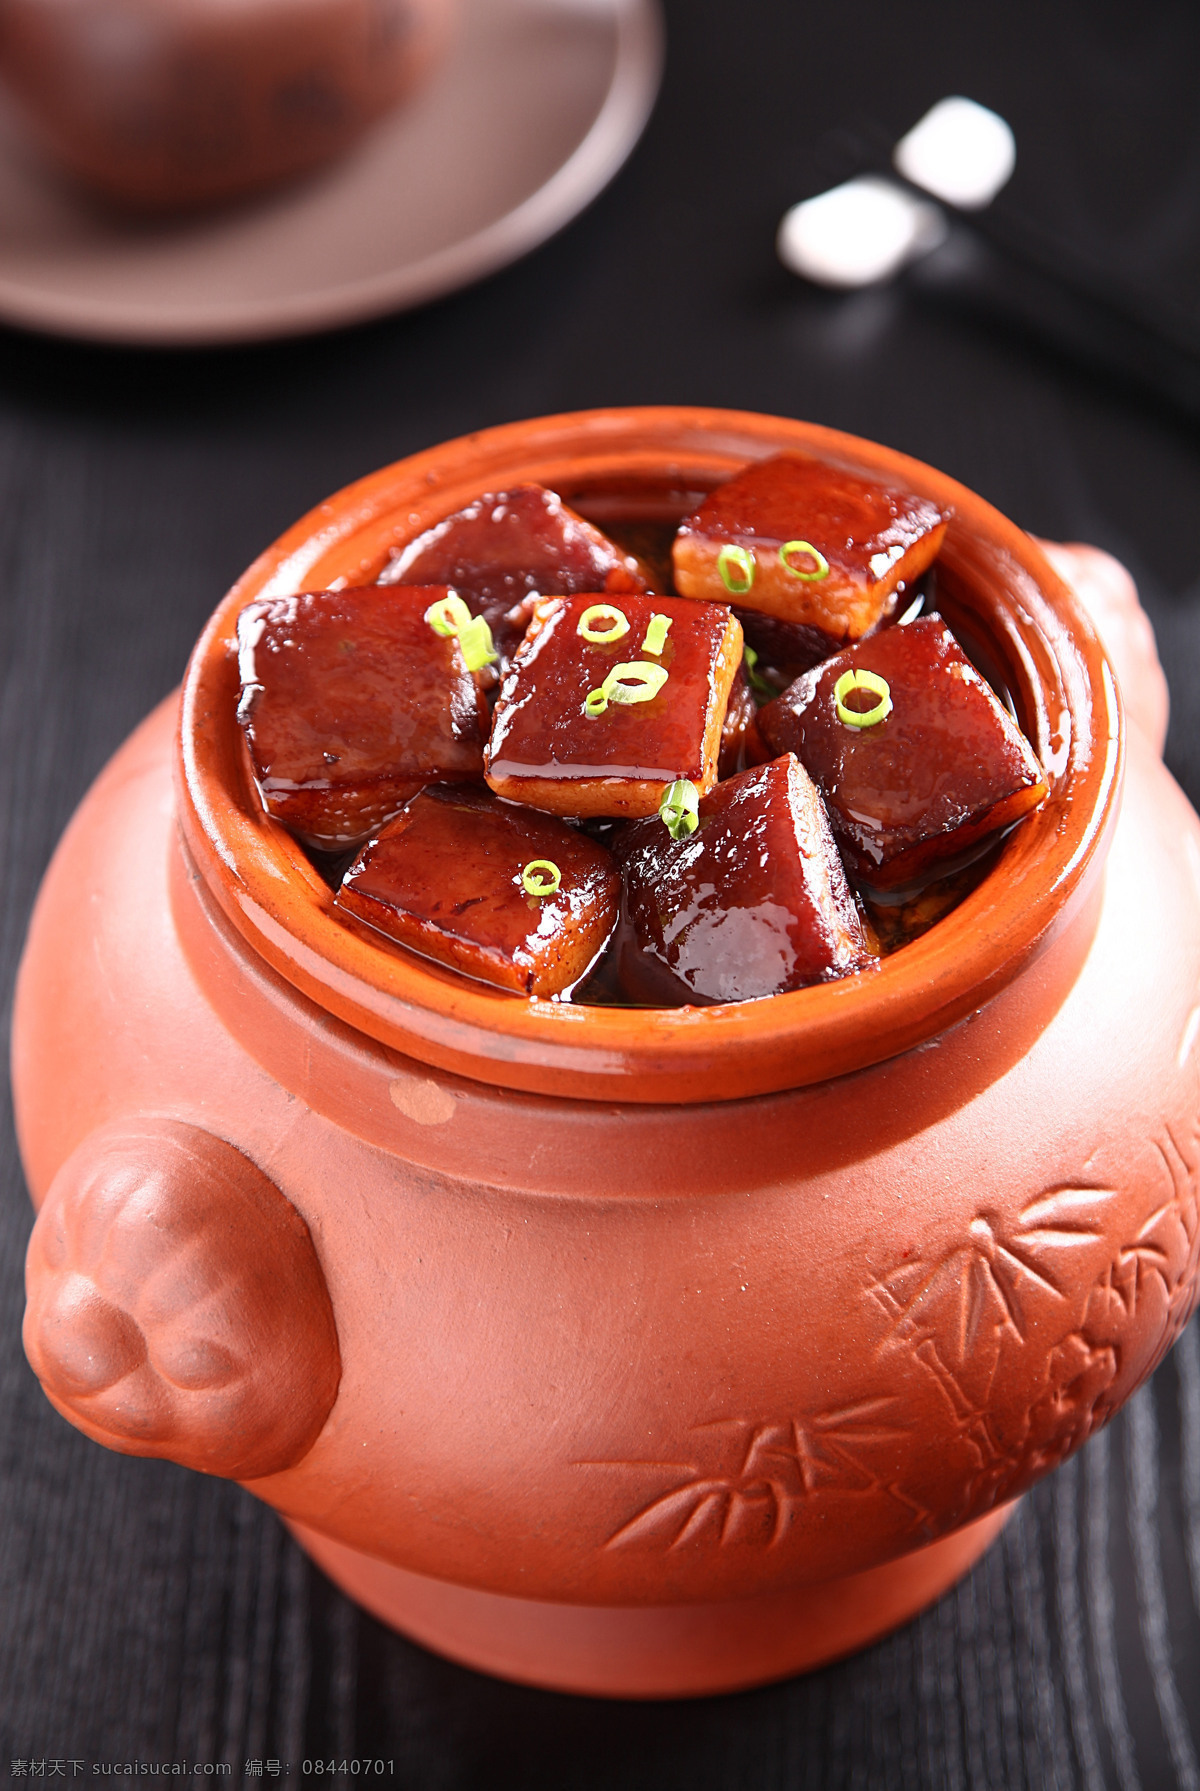 东坡肉 东波肉 红烧肉 坛子 中国菜 川菜 传统美食 餐饮美食